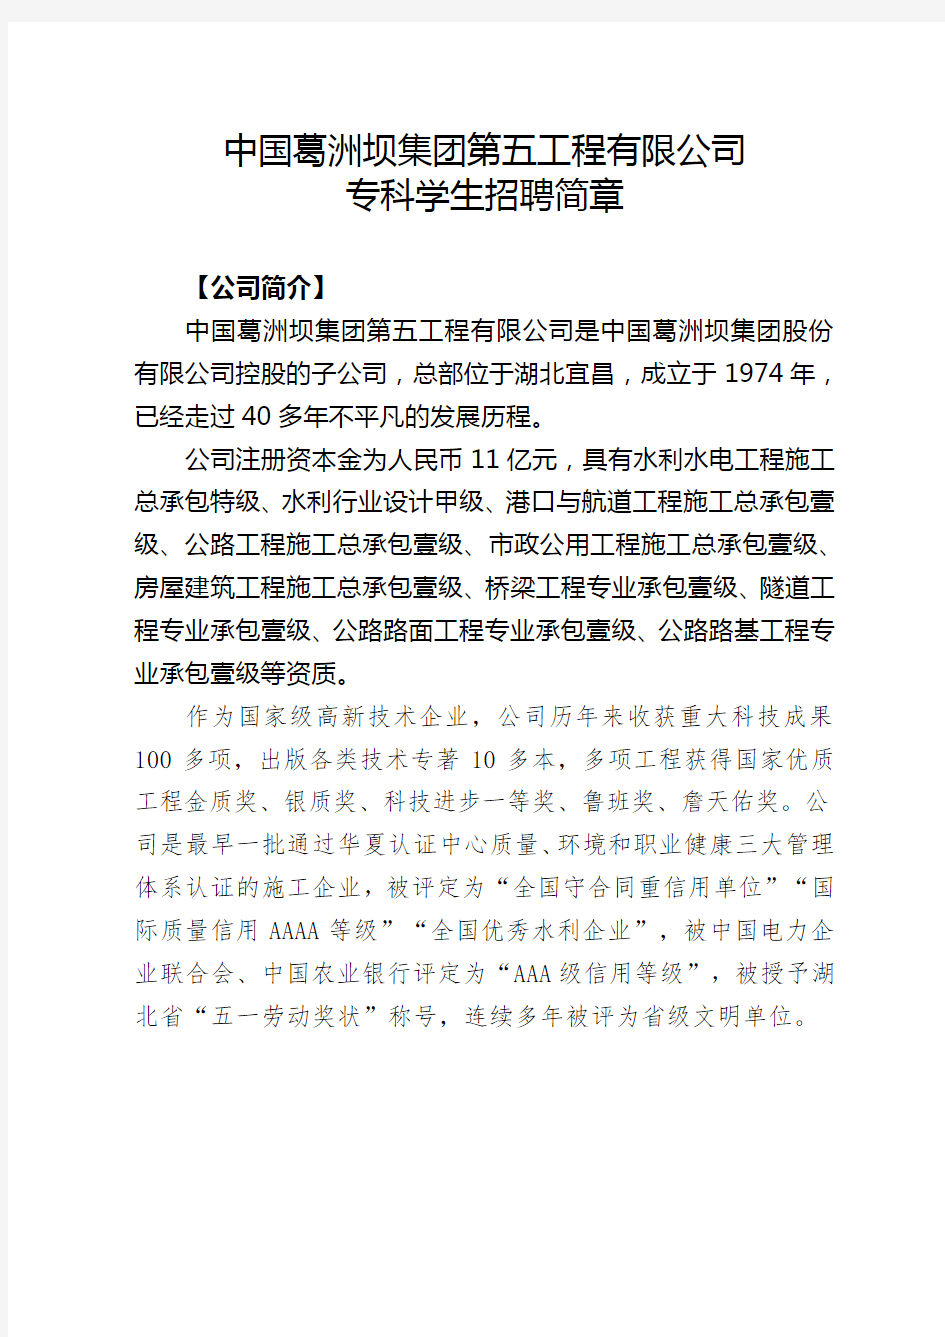 中国葛洲坝集团第五工程有限公司